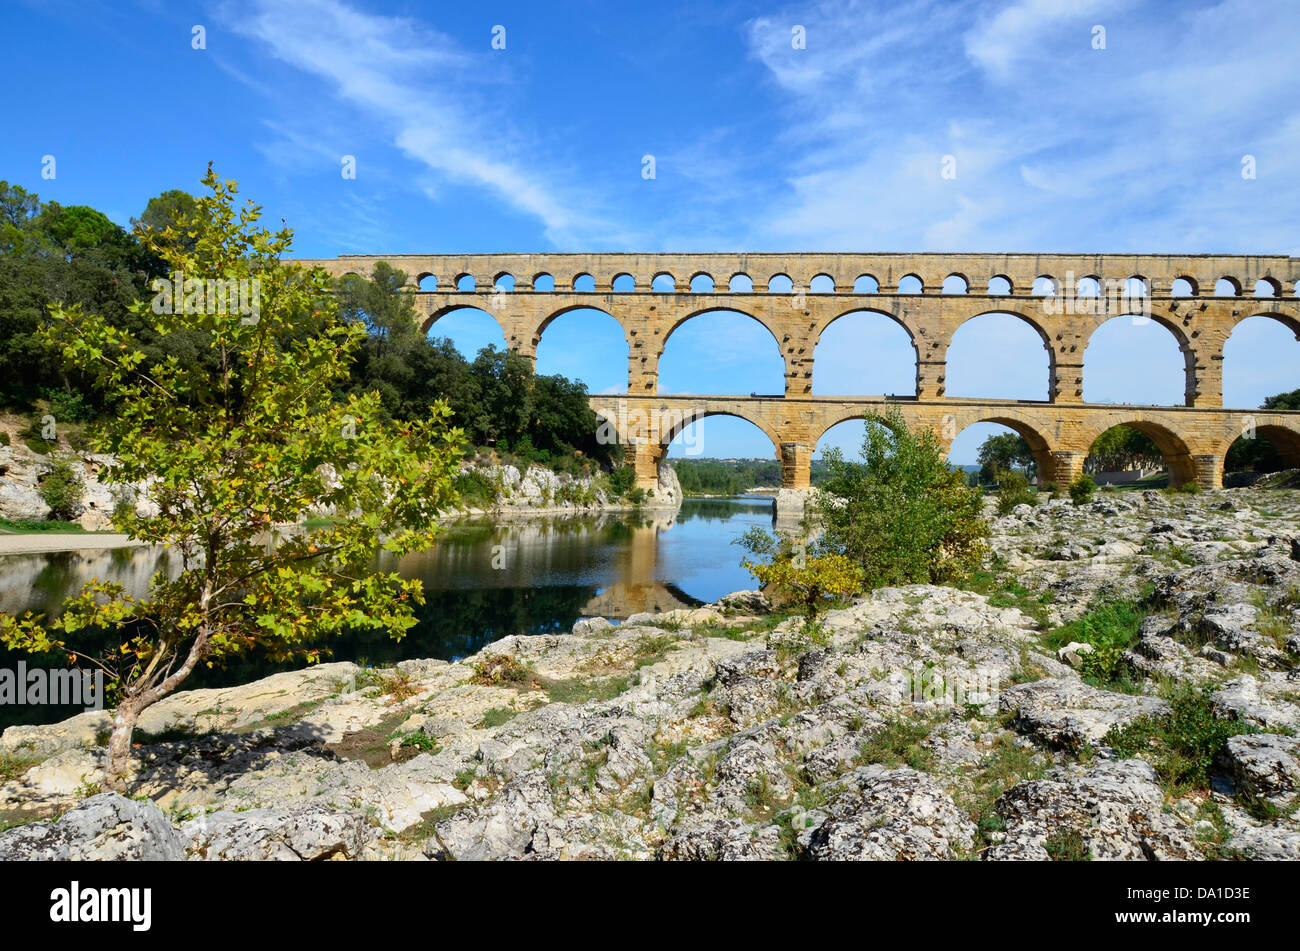 Pont du Gard, eines der beliebtesten touristischen Attraktionen Frankreichs und eines der beeindruckendsten Beispiele der römischen Architektur Stockfoto